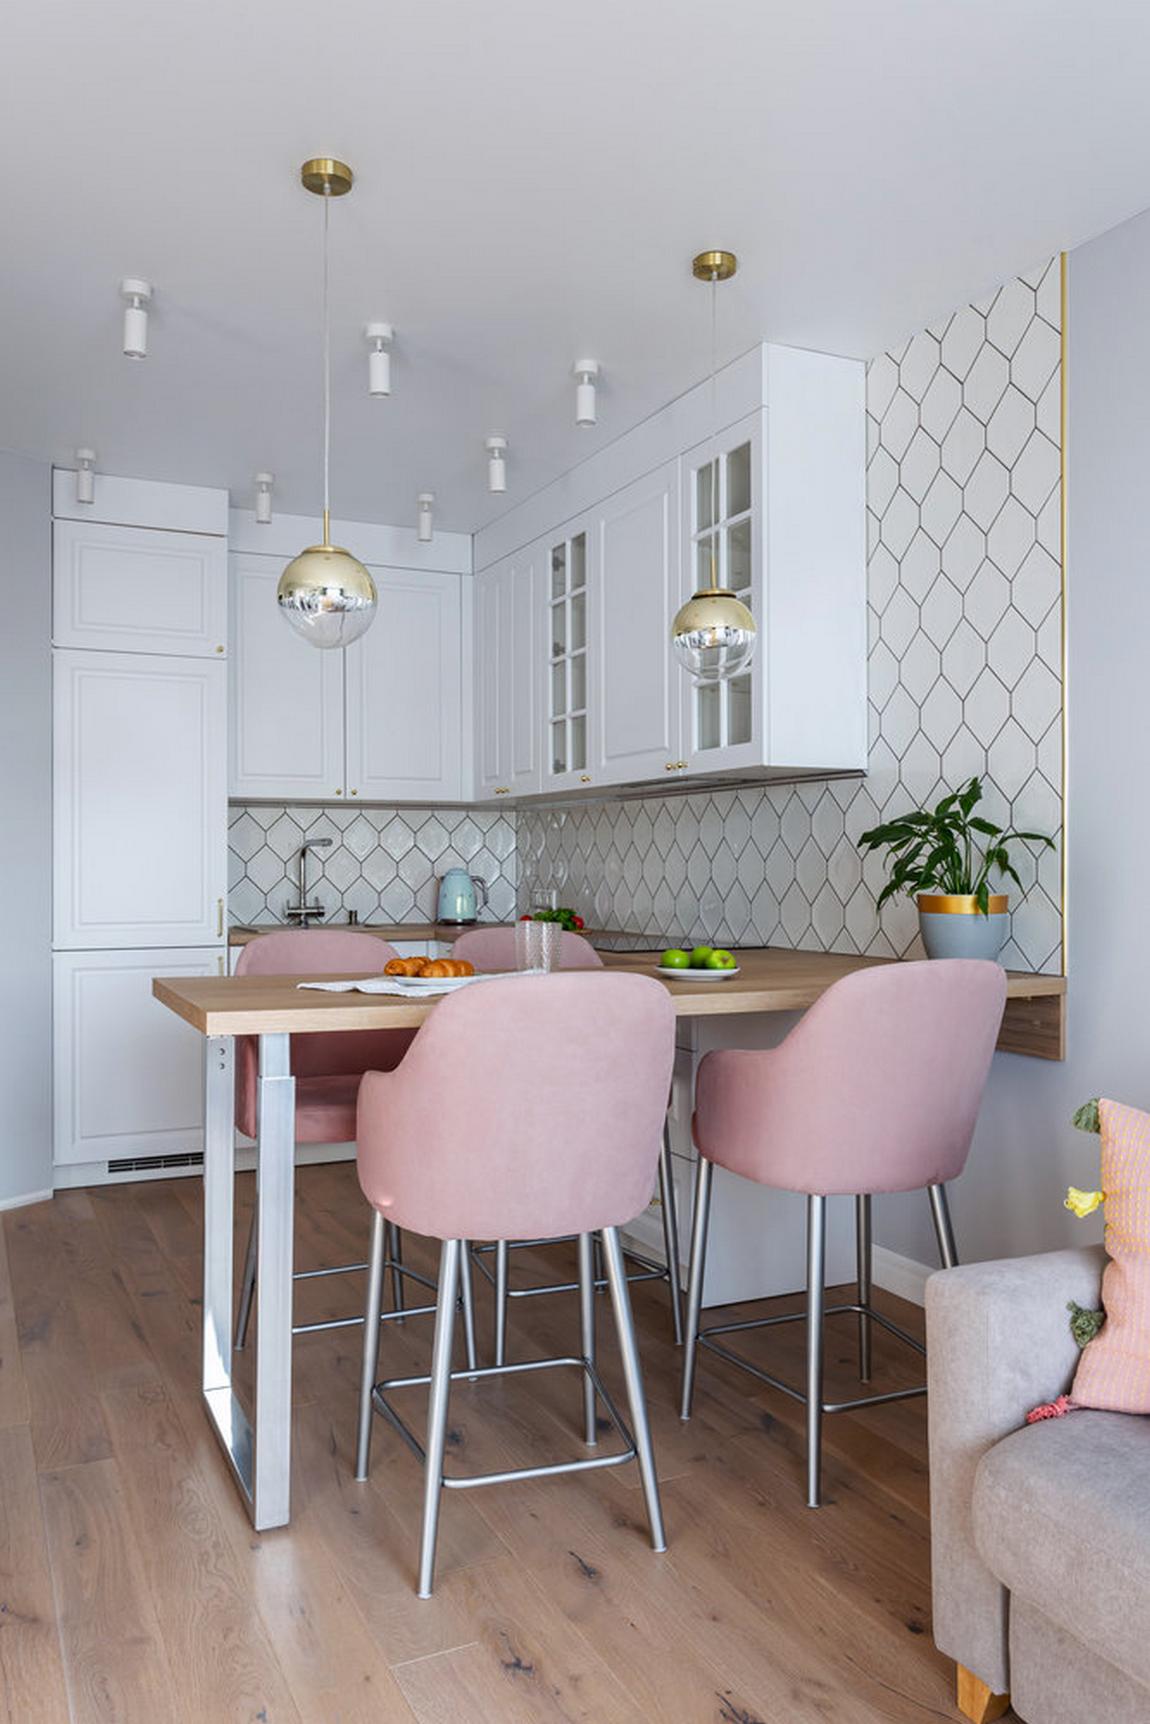 Từ góc chụp này, bạn sẽ thấy khu vực ăn uống được bố trí ở vị trí giữa phòng khách và phòng bếp. Bếp được thiết kế kiểu chữ L phù hợp với cấu trúc căn  hộ. Tủ bếp màu trắng tạo sự tương phản nhẹ nhàng trên màu tường sơn xám nhạt.